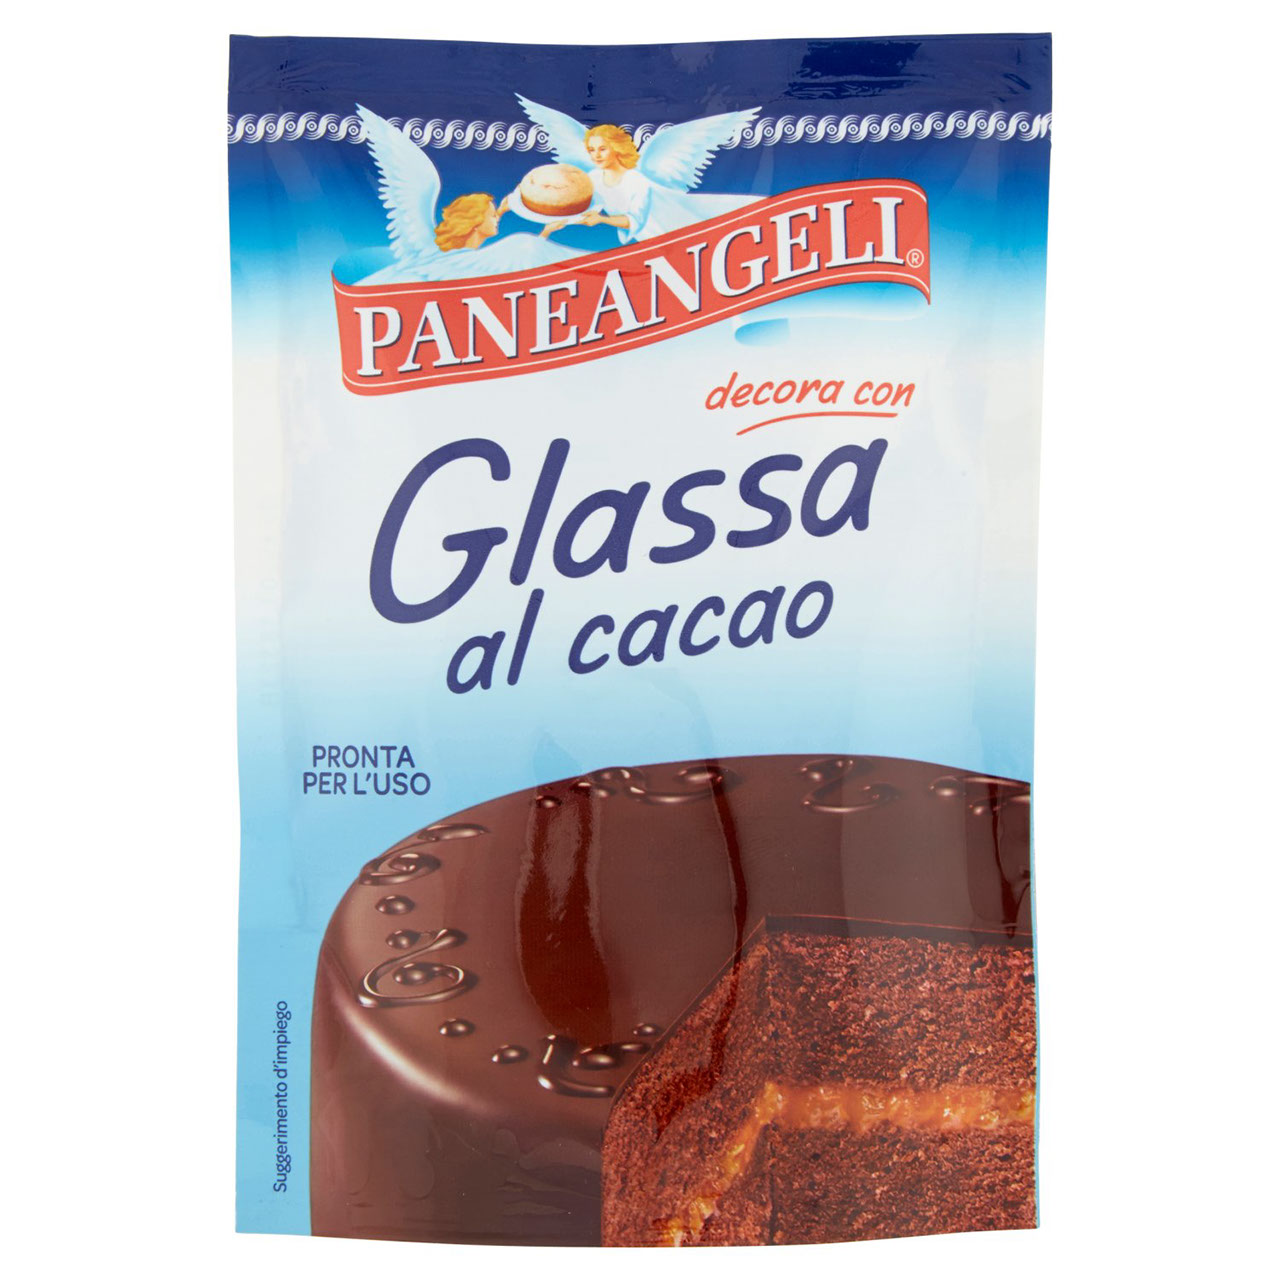 Paneangeli Glassa al Cioccolato in vendita online